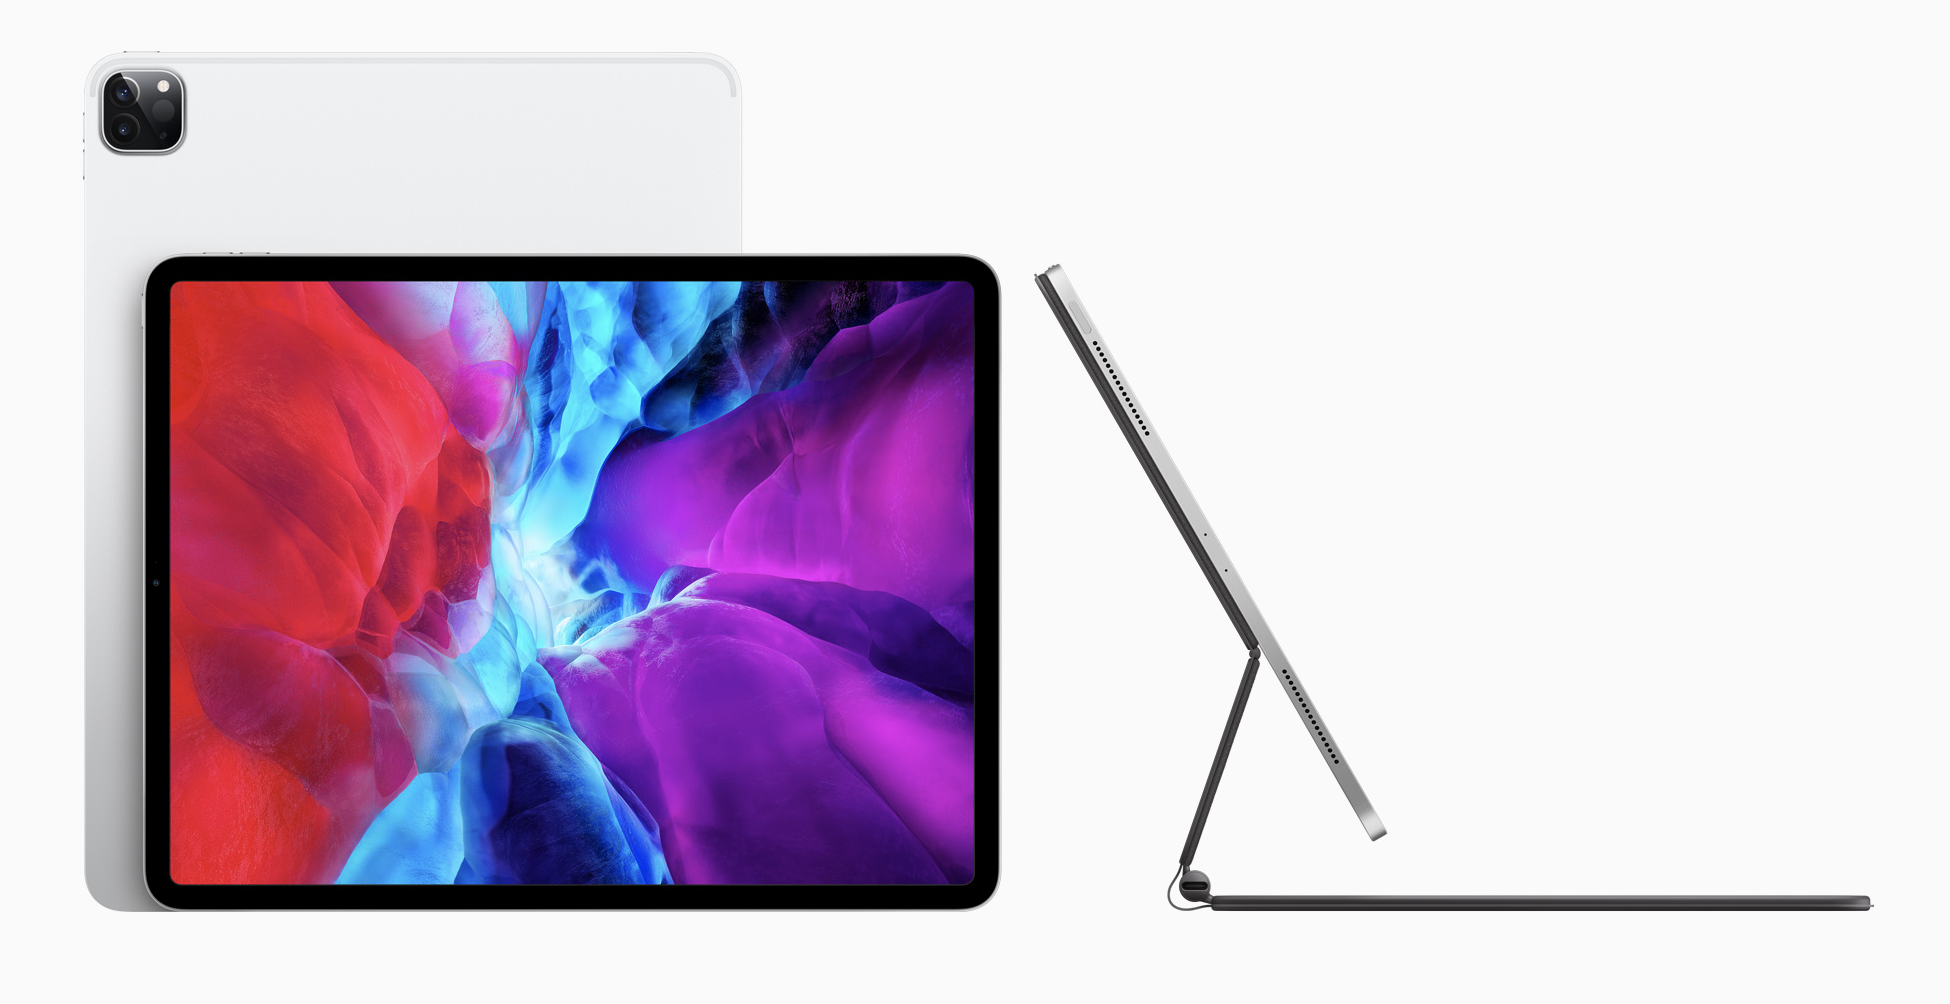 Hirtelen megjelent az új iPad Pro, MacBook Air és Mac Mini